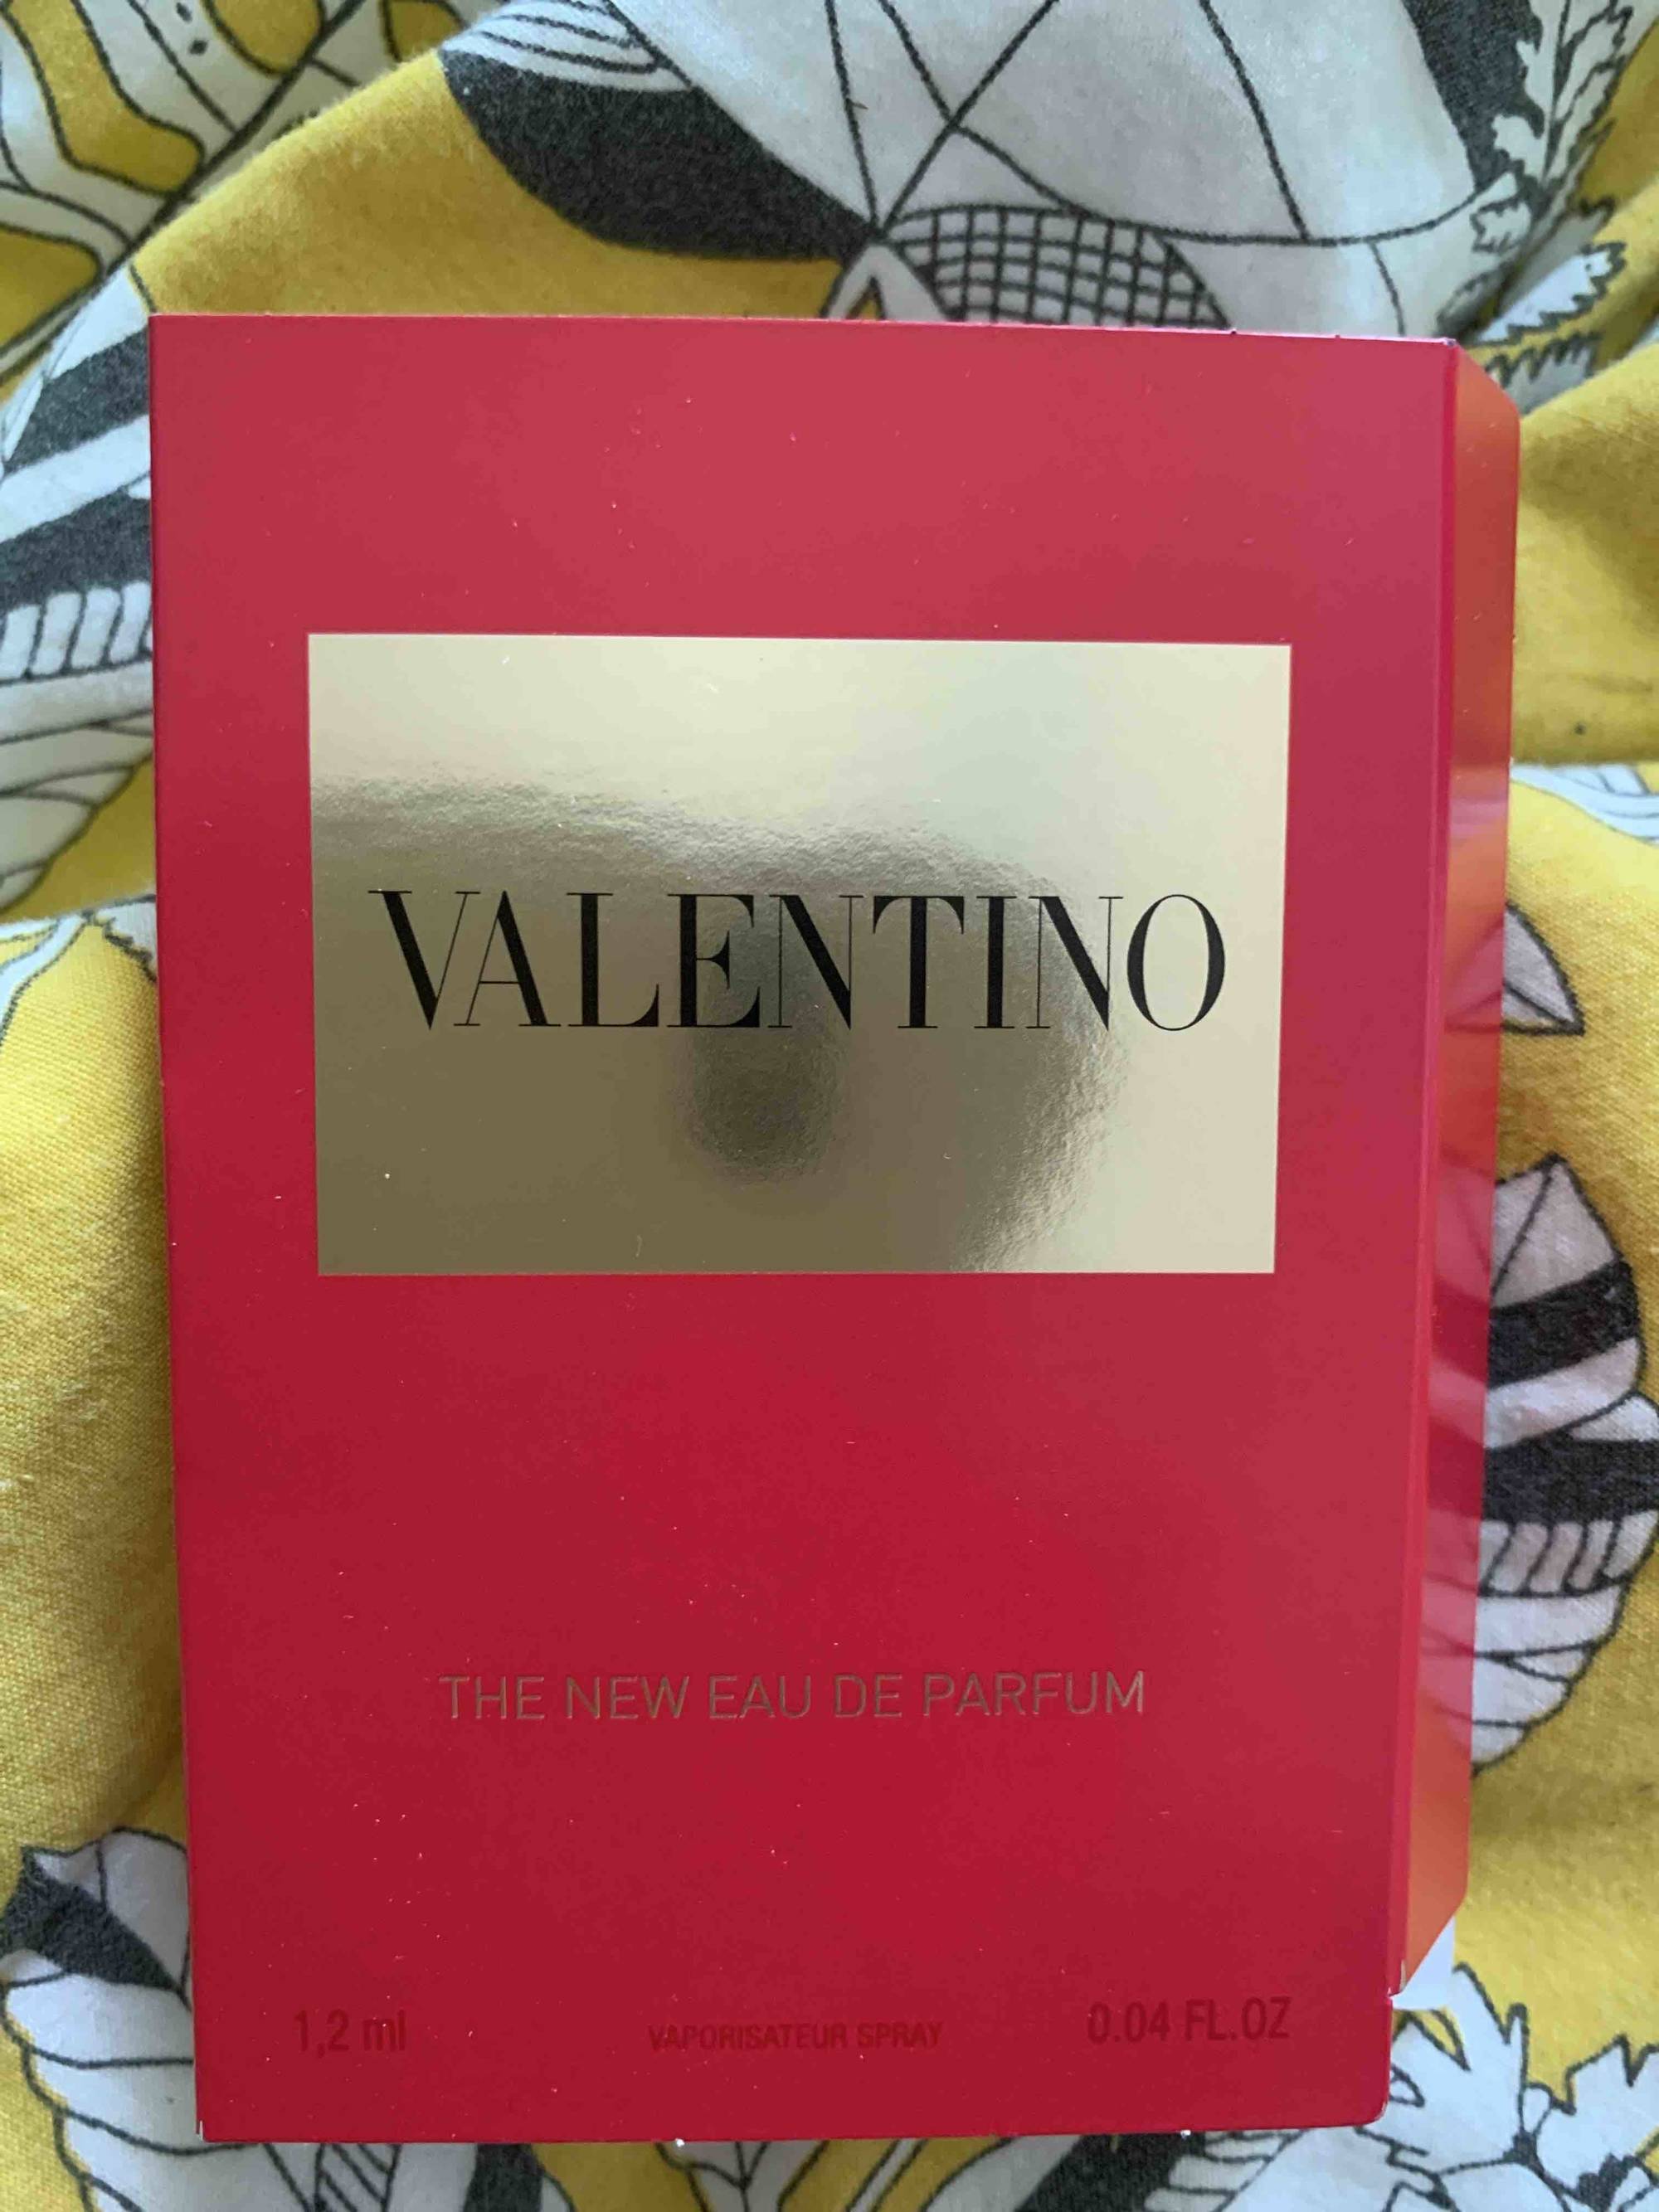 VALENTINO - The new Eau de parfum